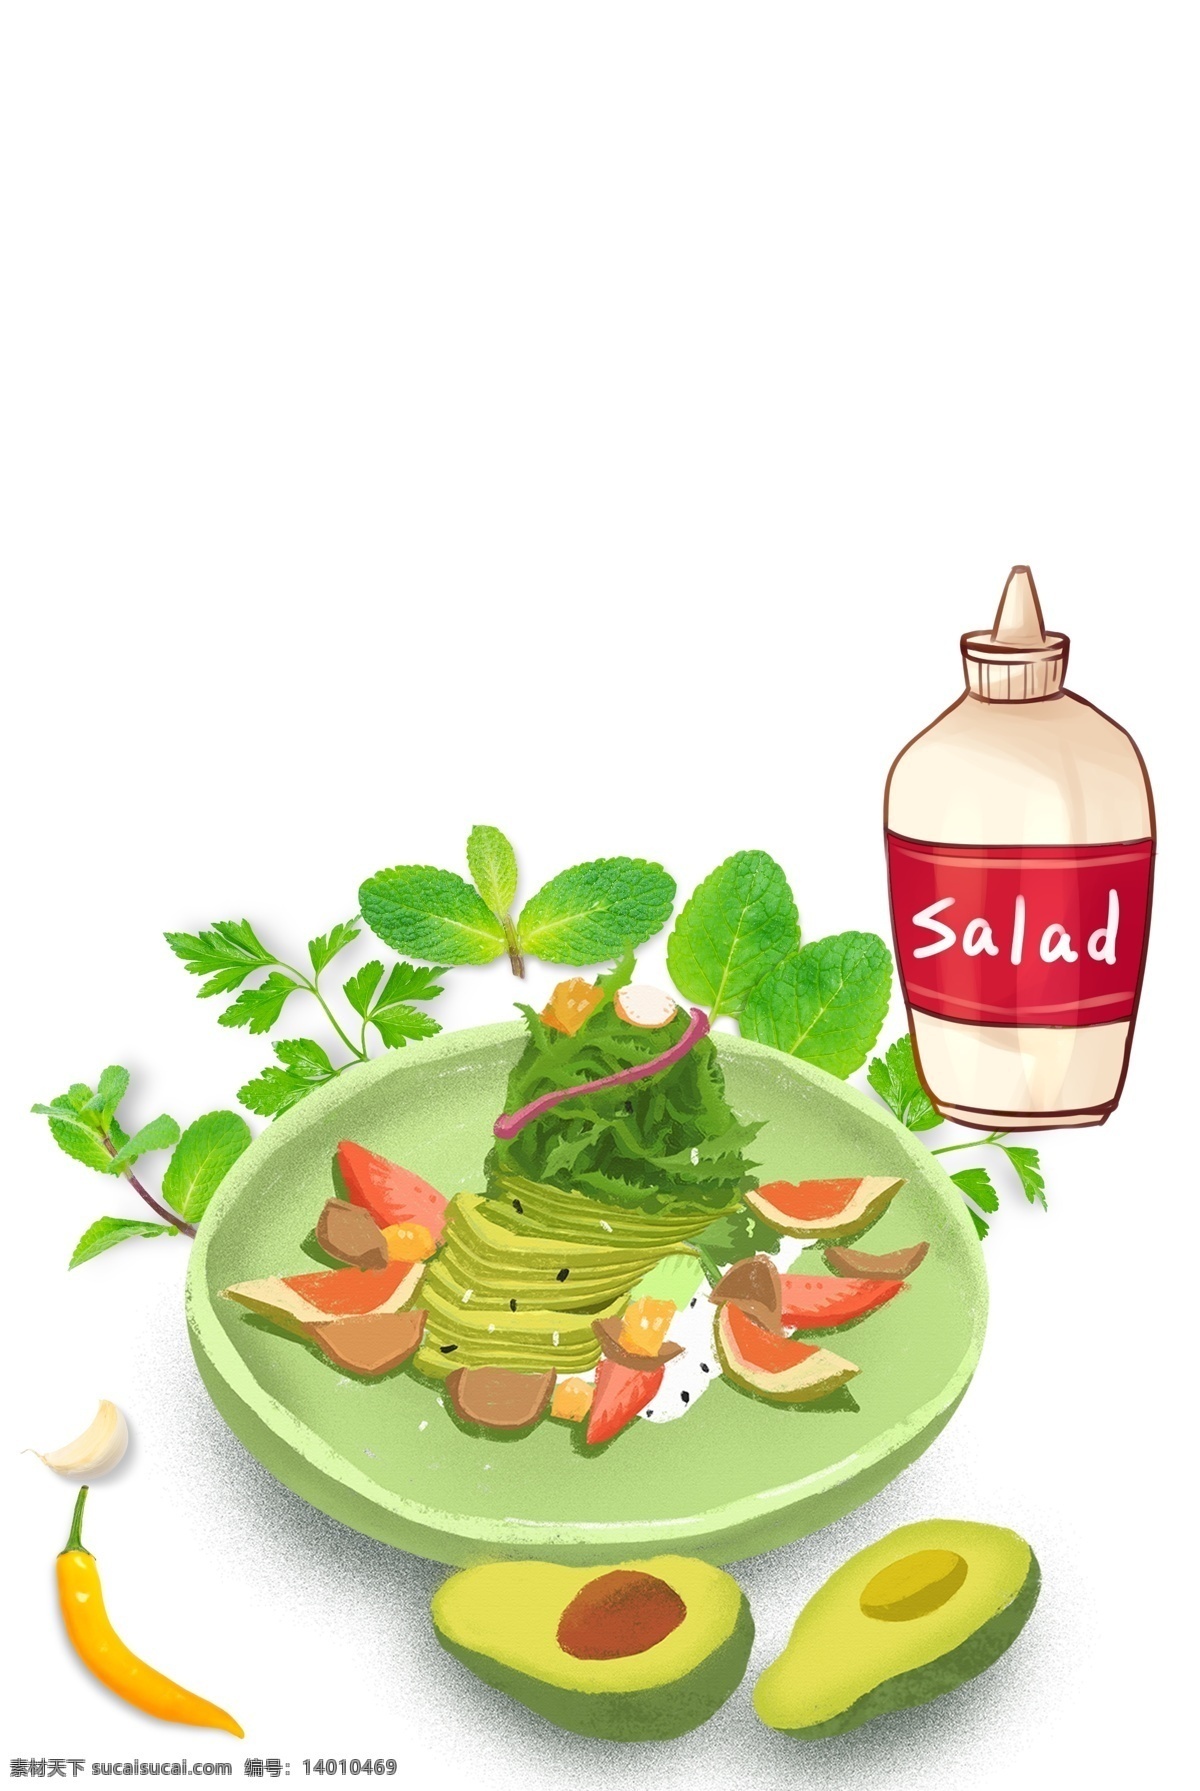 牛油果 沙拉 背景 海报 蔬菜沙拉 新鲜 美味 果蔬 手绘蔬菜 sala